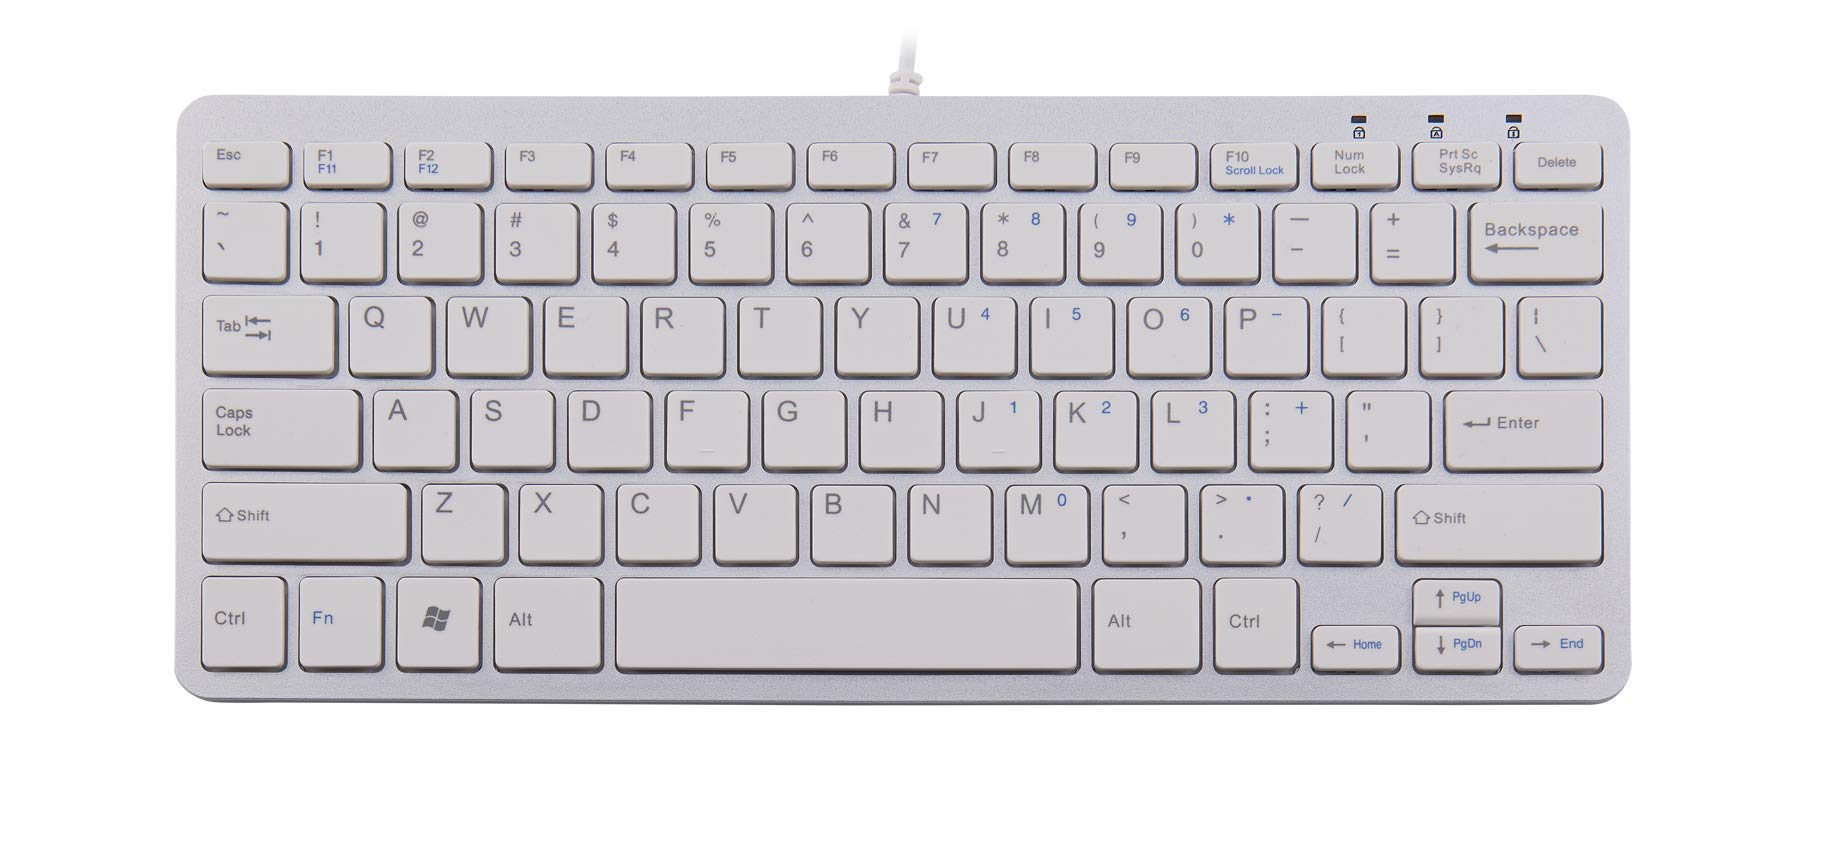 R-Go Kompakte Ergonomische Tastatur - QWERTY (US) Natürliche Tastatur mit flacher Oberfläche - Verkabelte USB-tastatur mit kompakte Design - Leichter Tastenanschlag - LED - Weiß